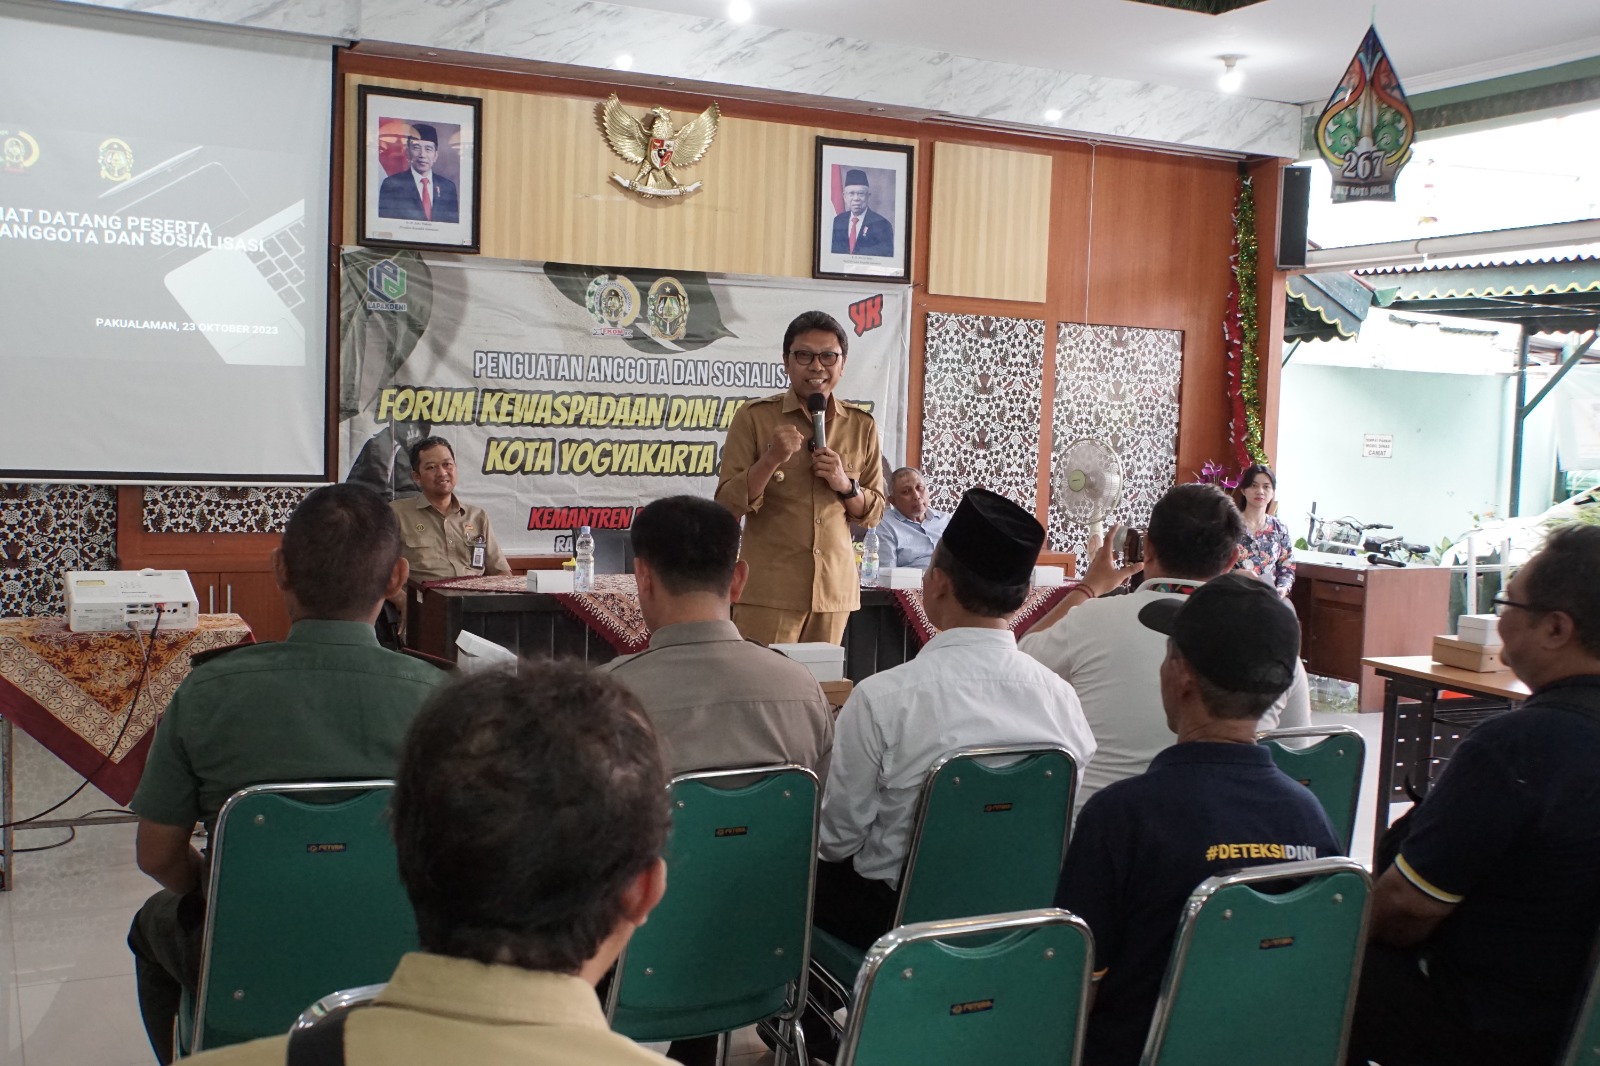 Penguatan Anggota Dan Sosialisasi FKDM Kota Yogyakarta di kemantren Pakualaman